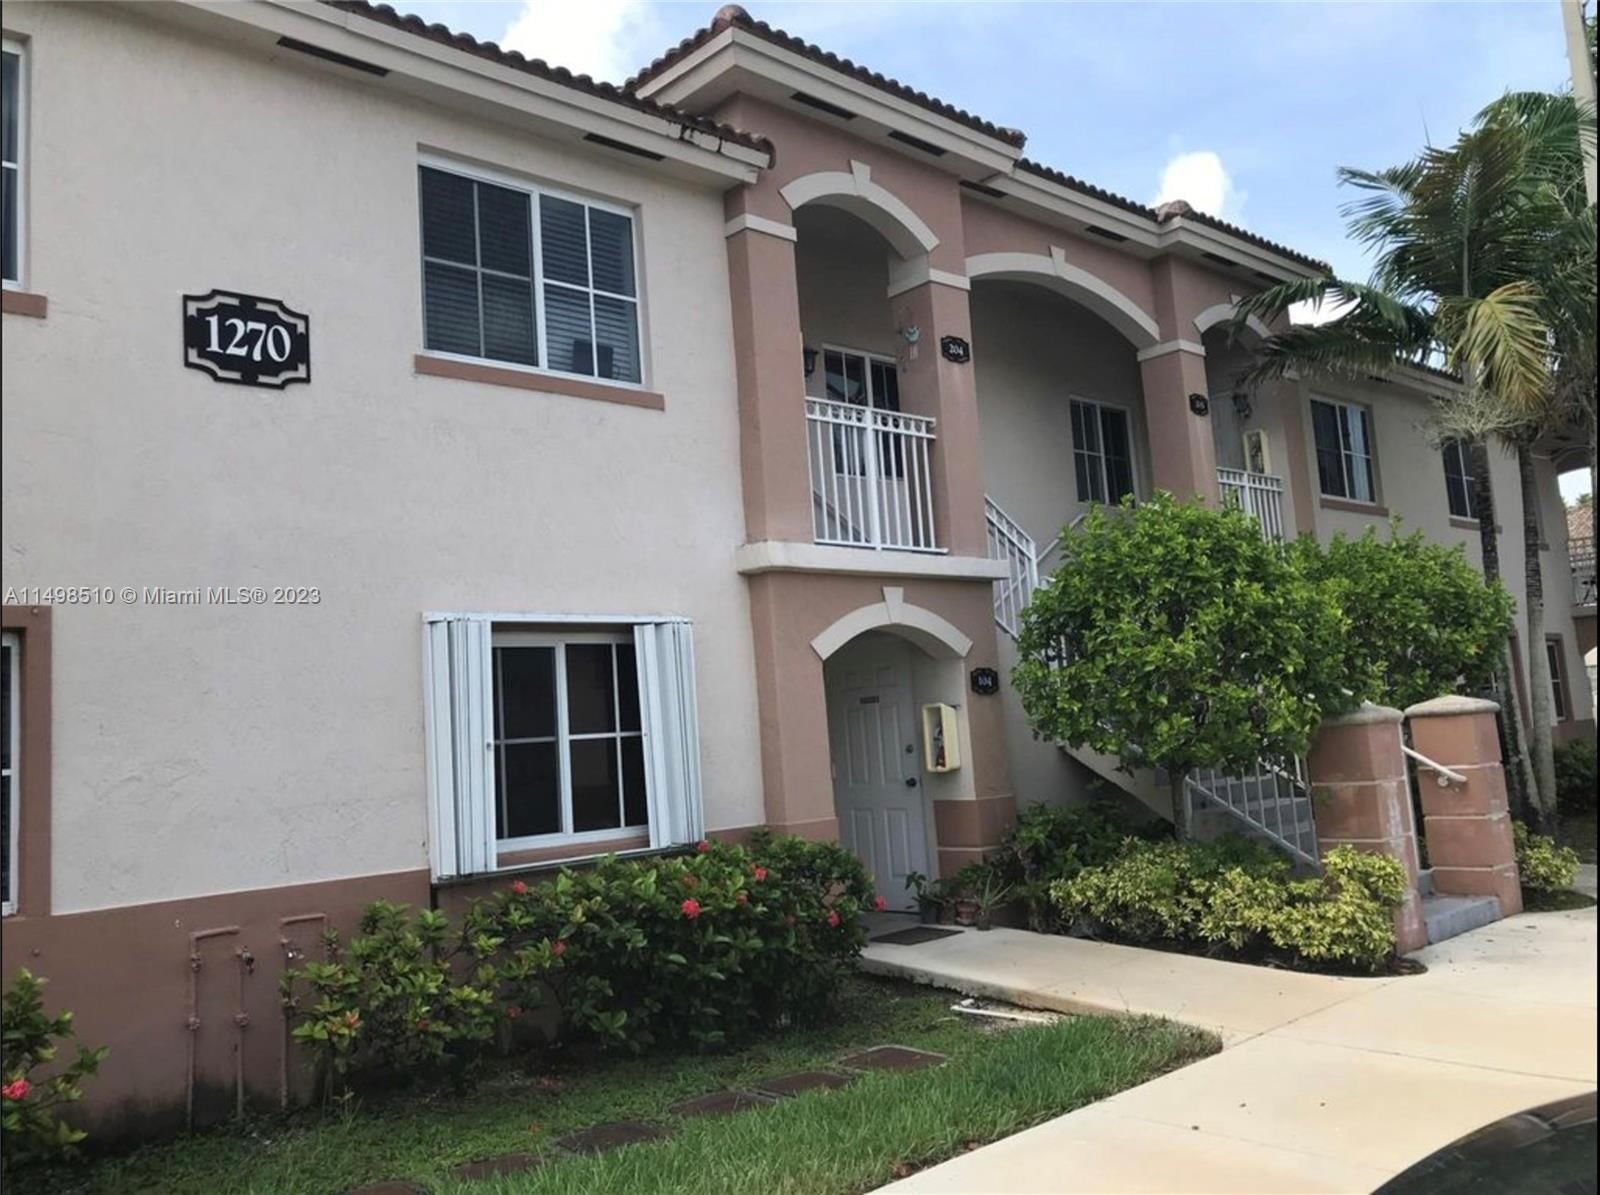 Real estate property located at 1270 26th St #205, Miami-Dade County, VENETIA GARDENS CONDO, Homestead, FL